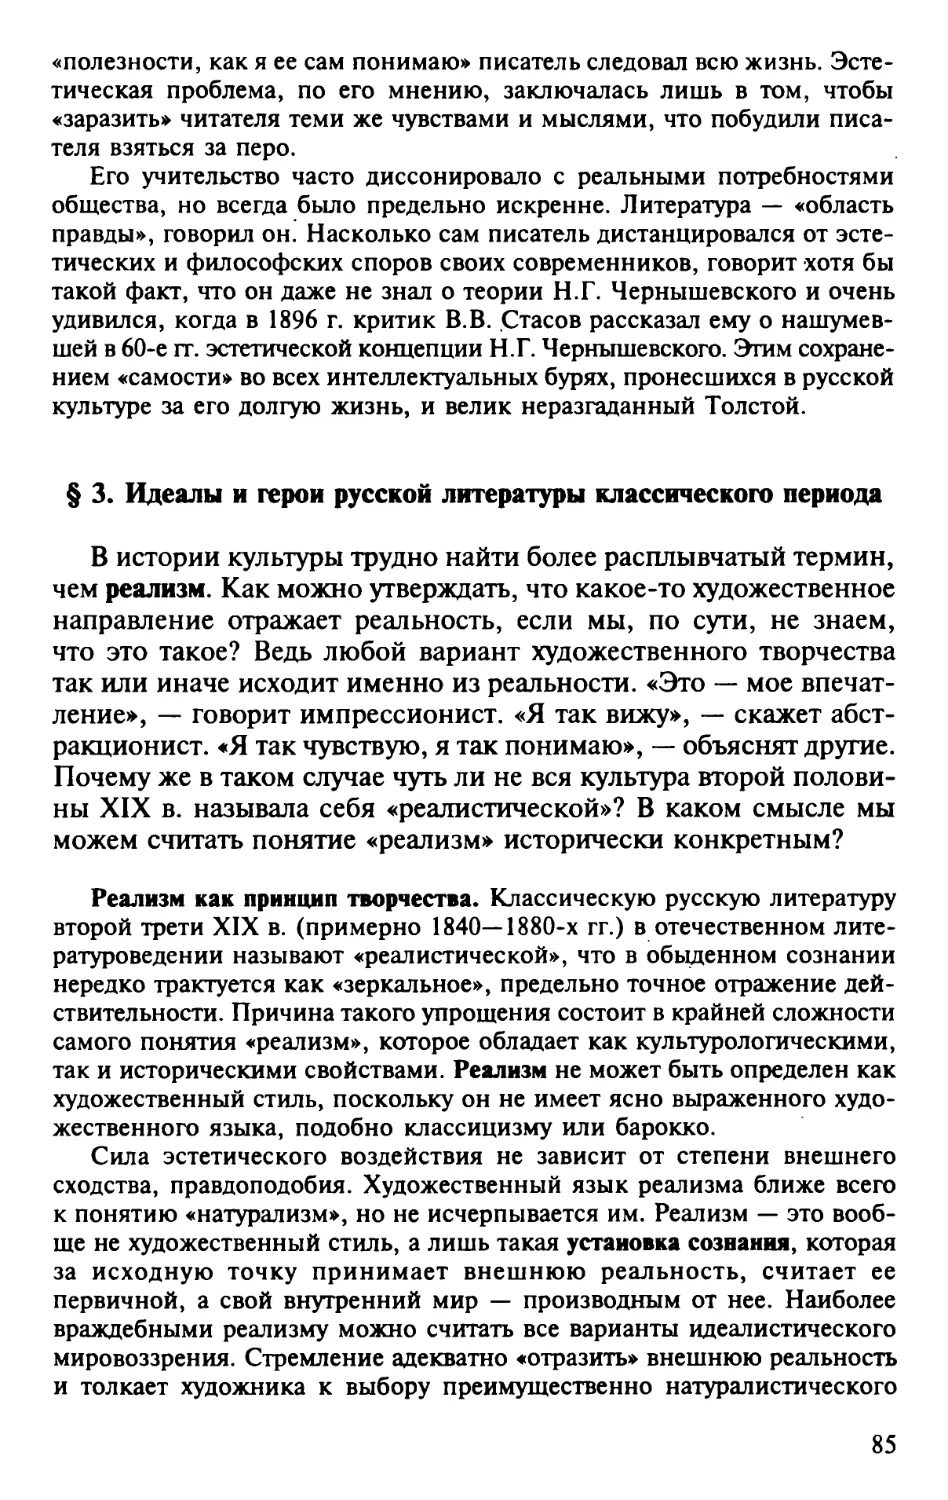 § 3. Идеалы и герои русской литературы классического периода